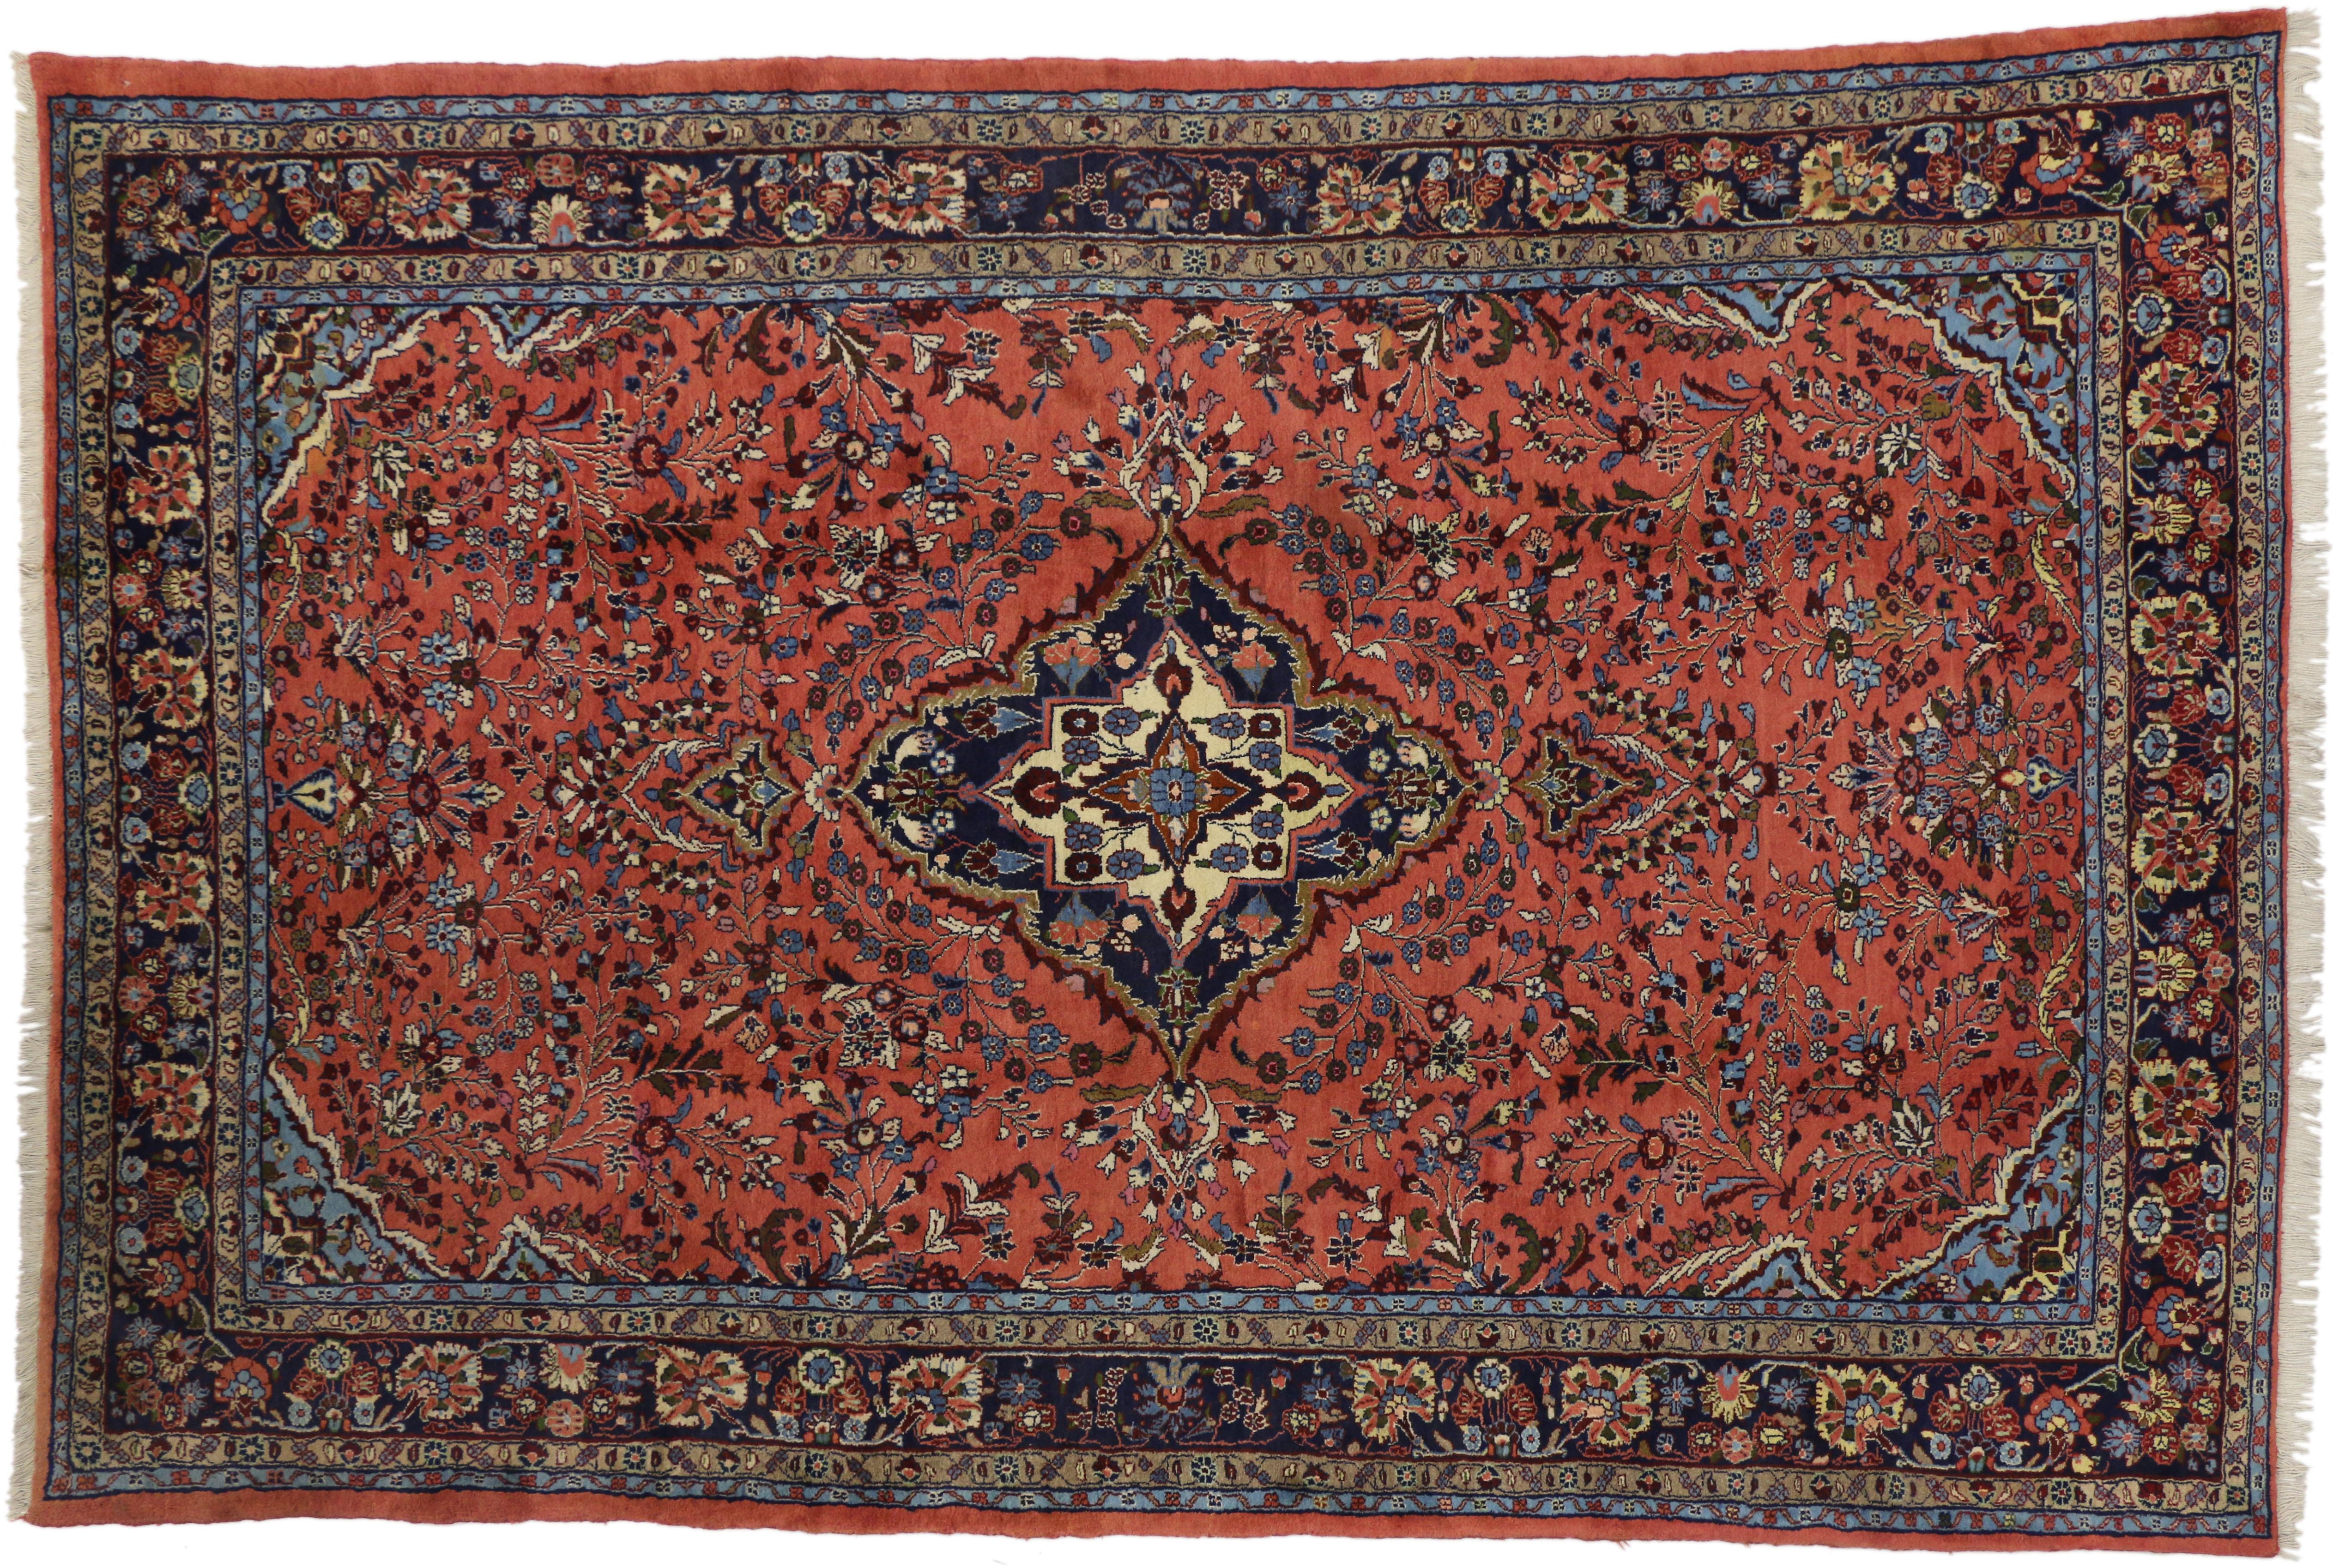 60340, alter persischer Mehraban-Teppich im traditionellen Stil. Dieser schöne handgeknüpfte alte persische Mehraban-Teppich aus Wolle zeigt ein marineblaues und elfenbeinfarbenes, gelapptes Medaillon, das von floralen Allover-Sprays und blühenden